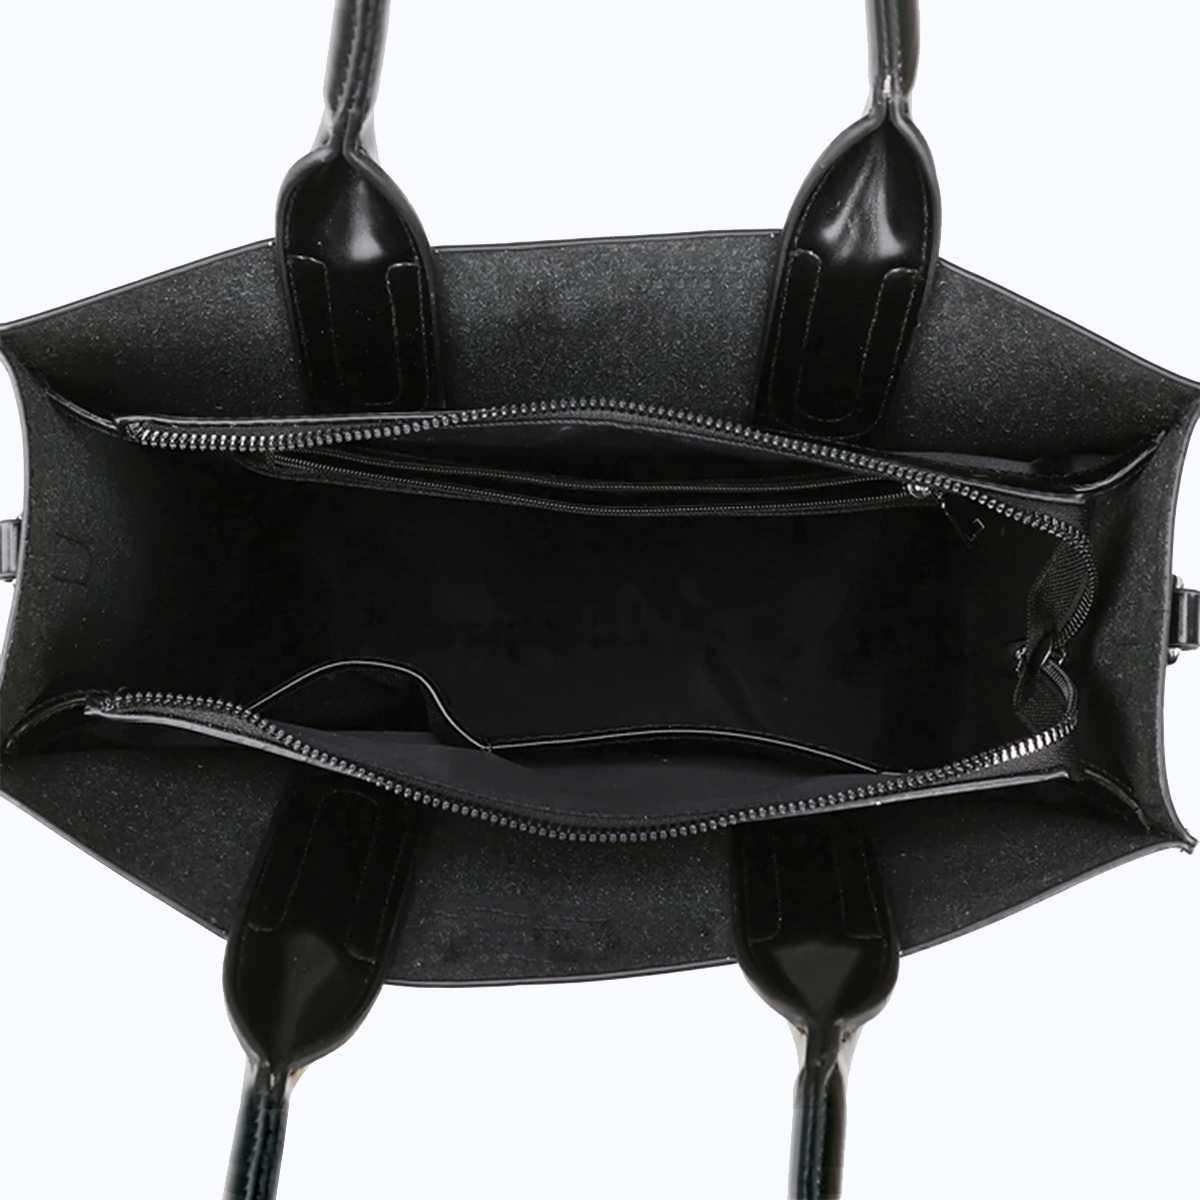 Gordon Setter Luxury Handbag V1